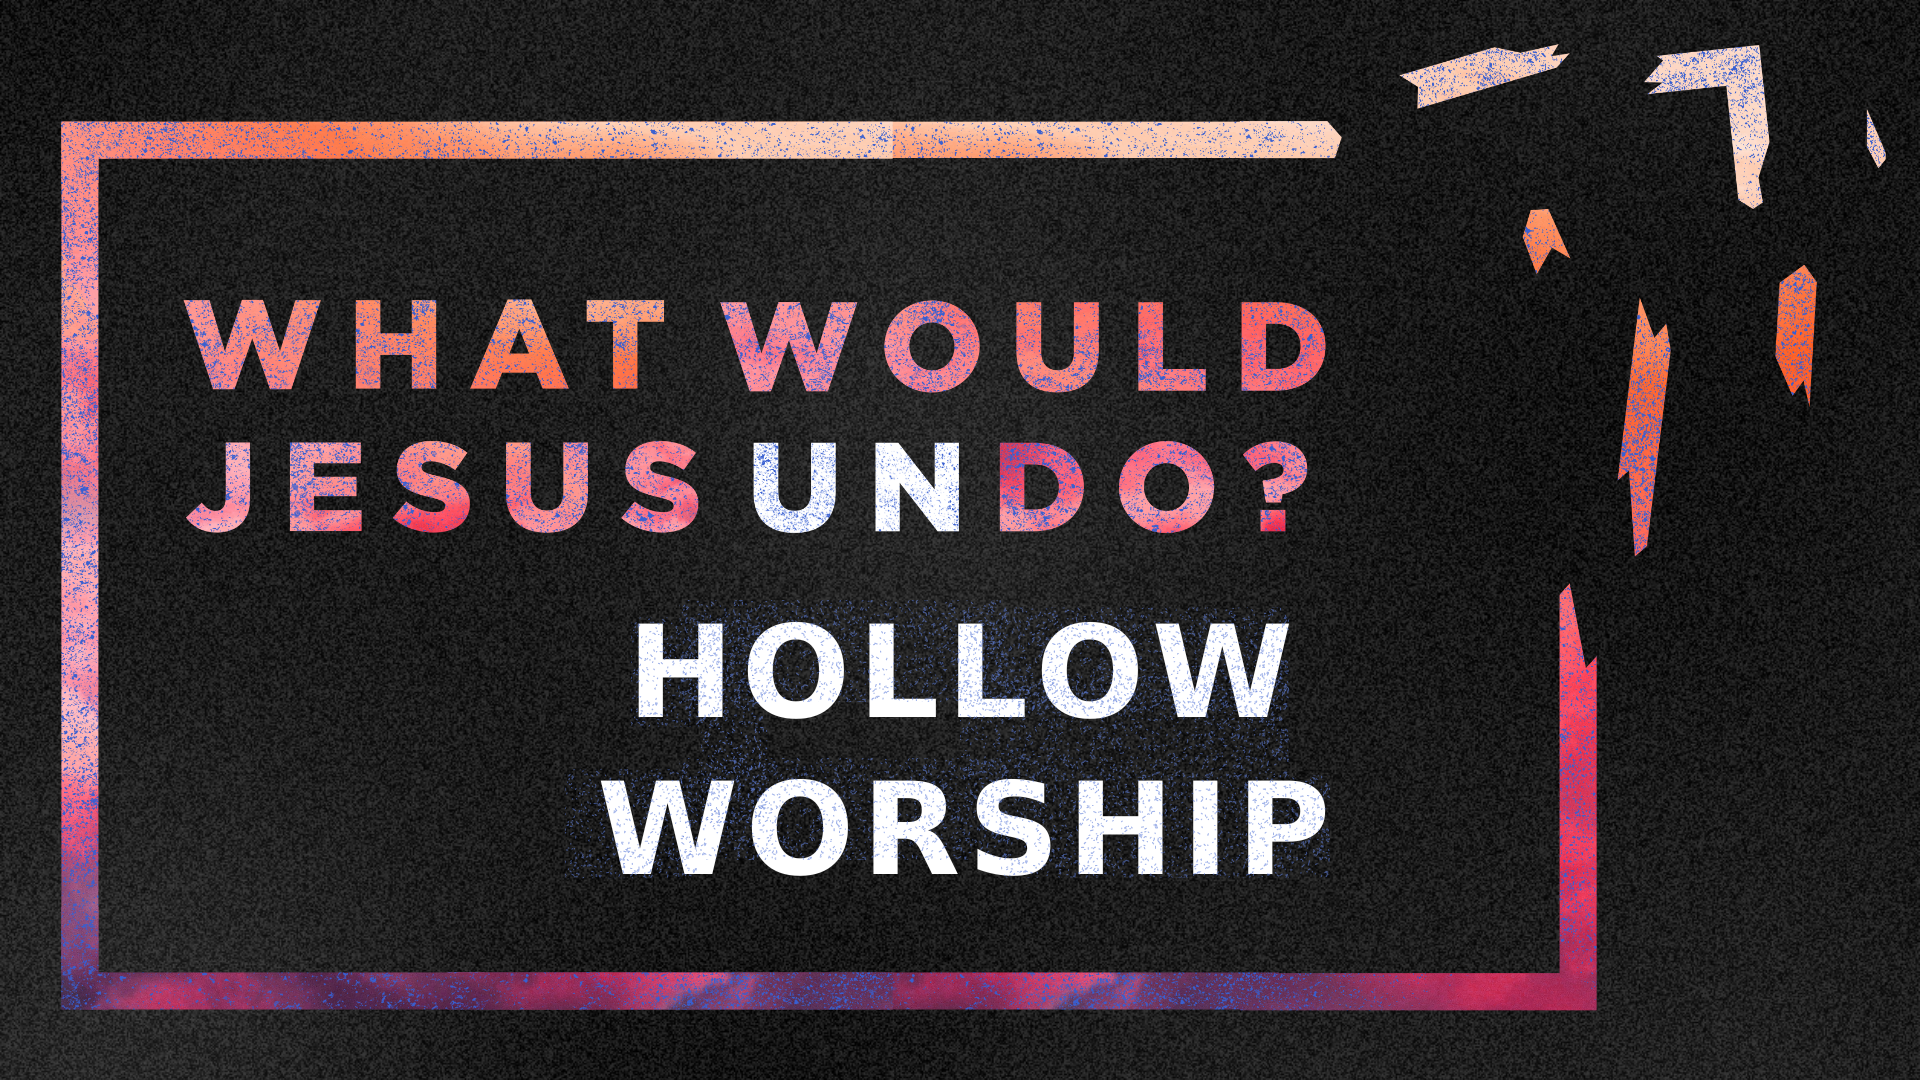 WWJU: Hollow Worship